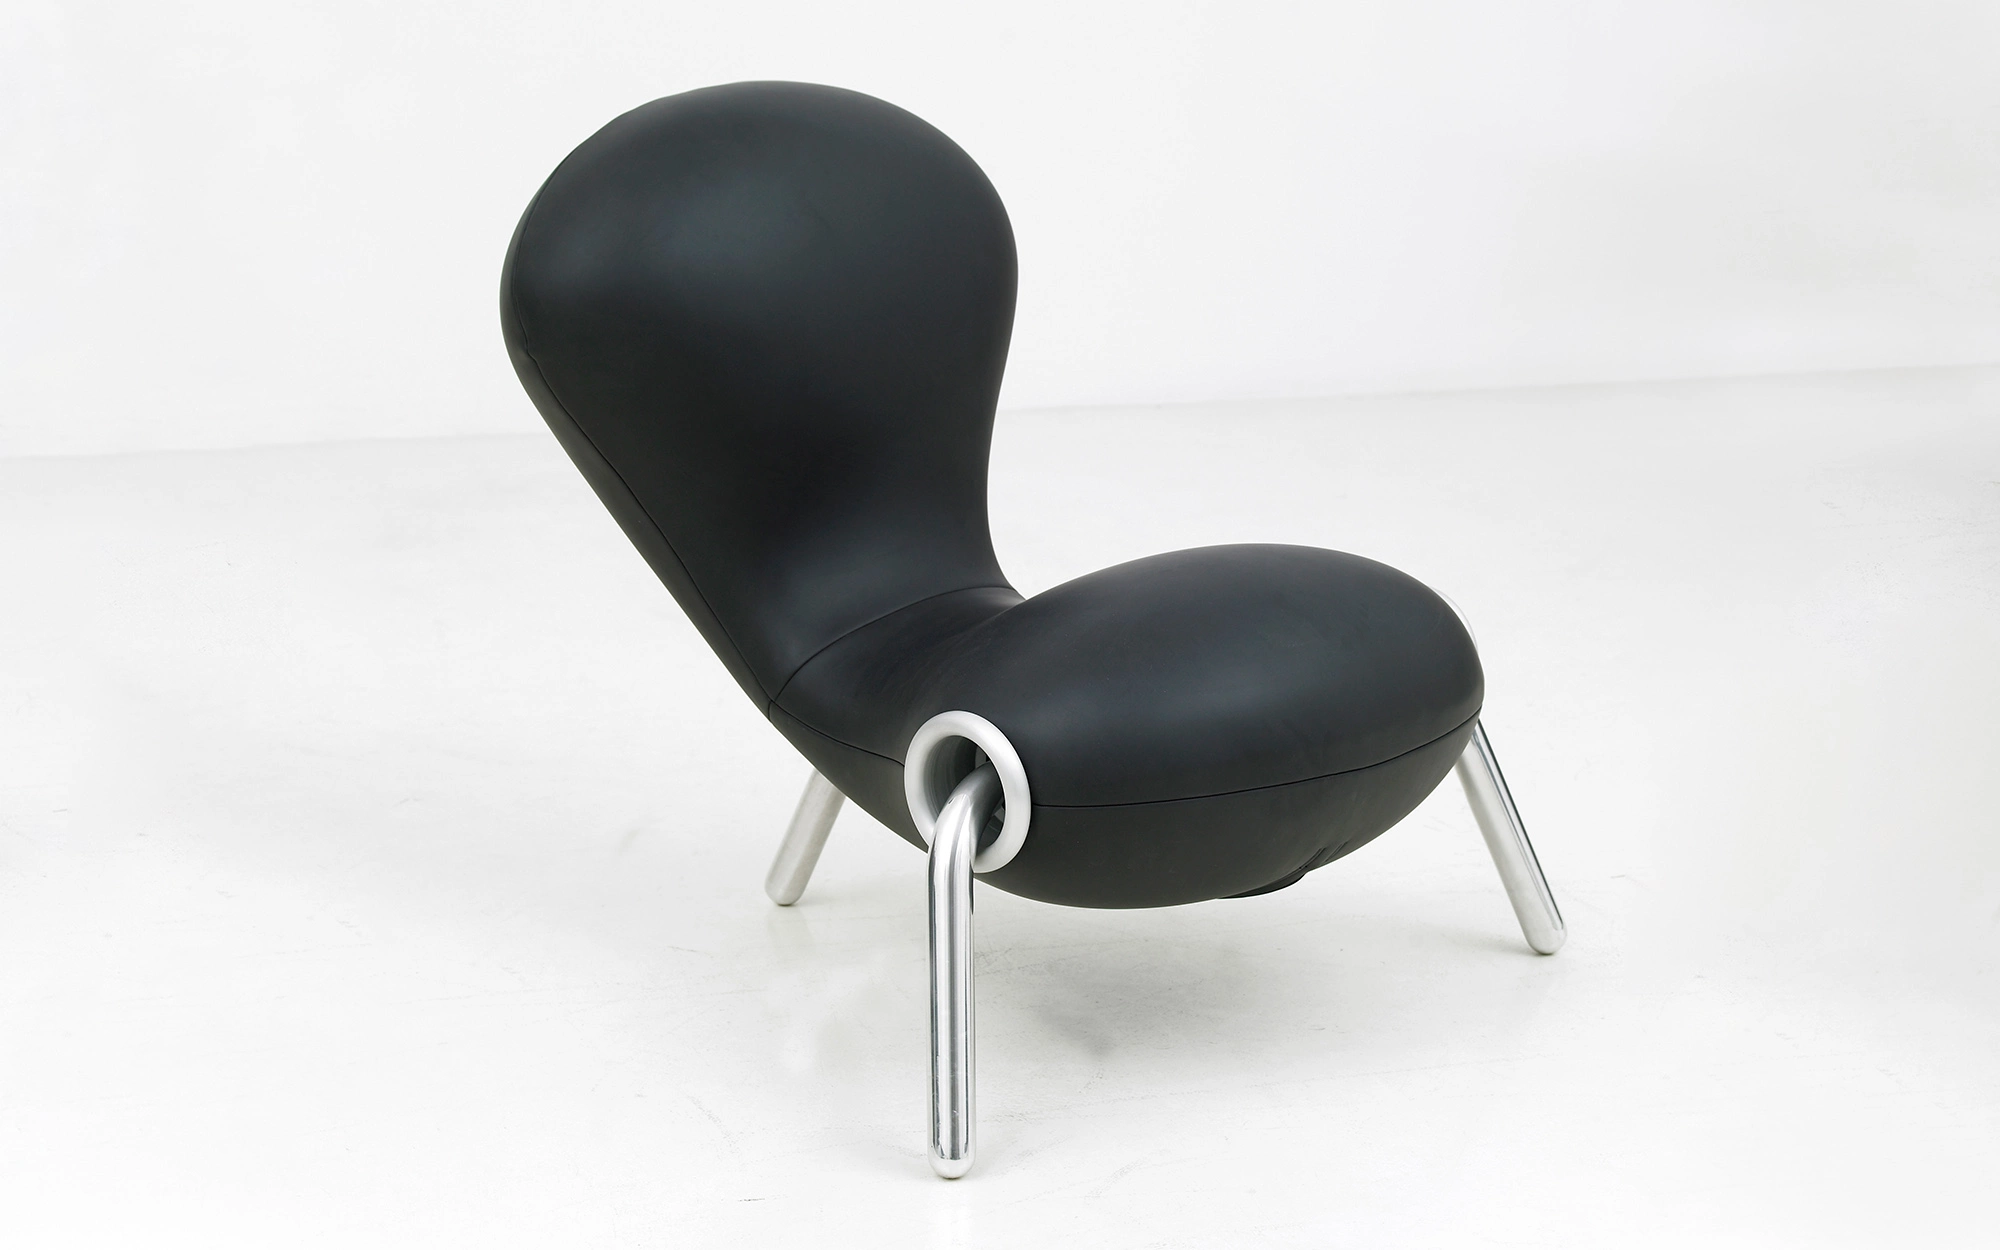 Embryo Chair - Marc Newson - chair - Galerie kreo